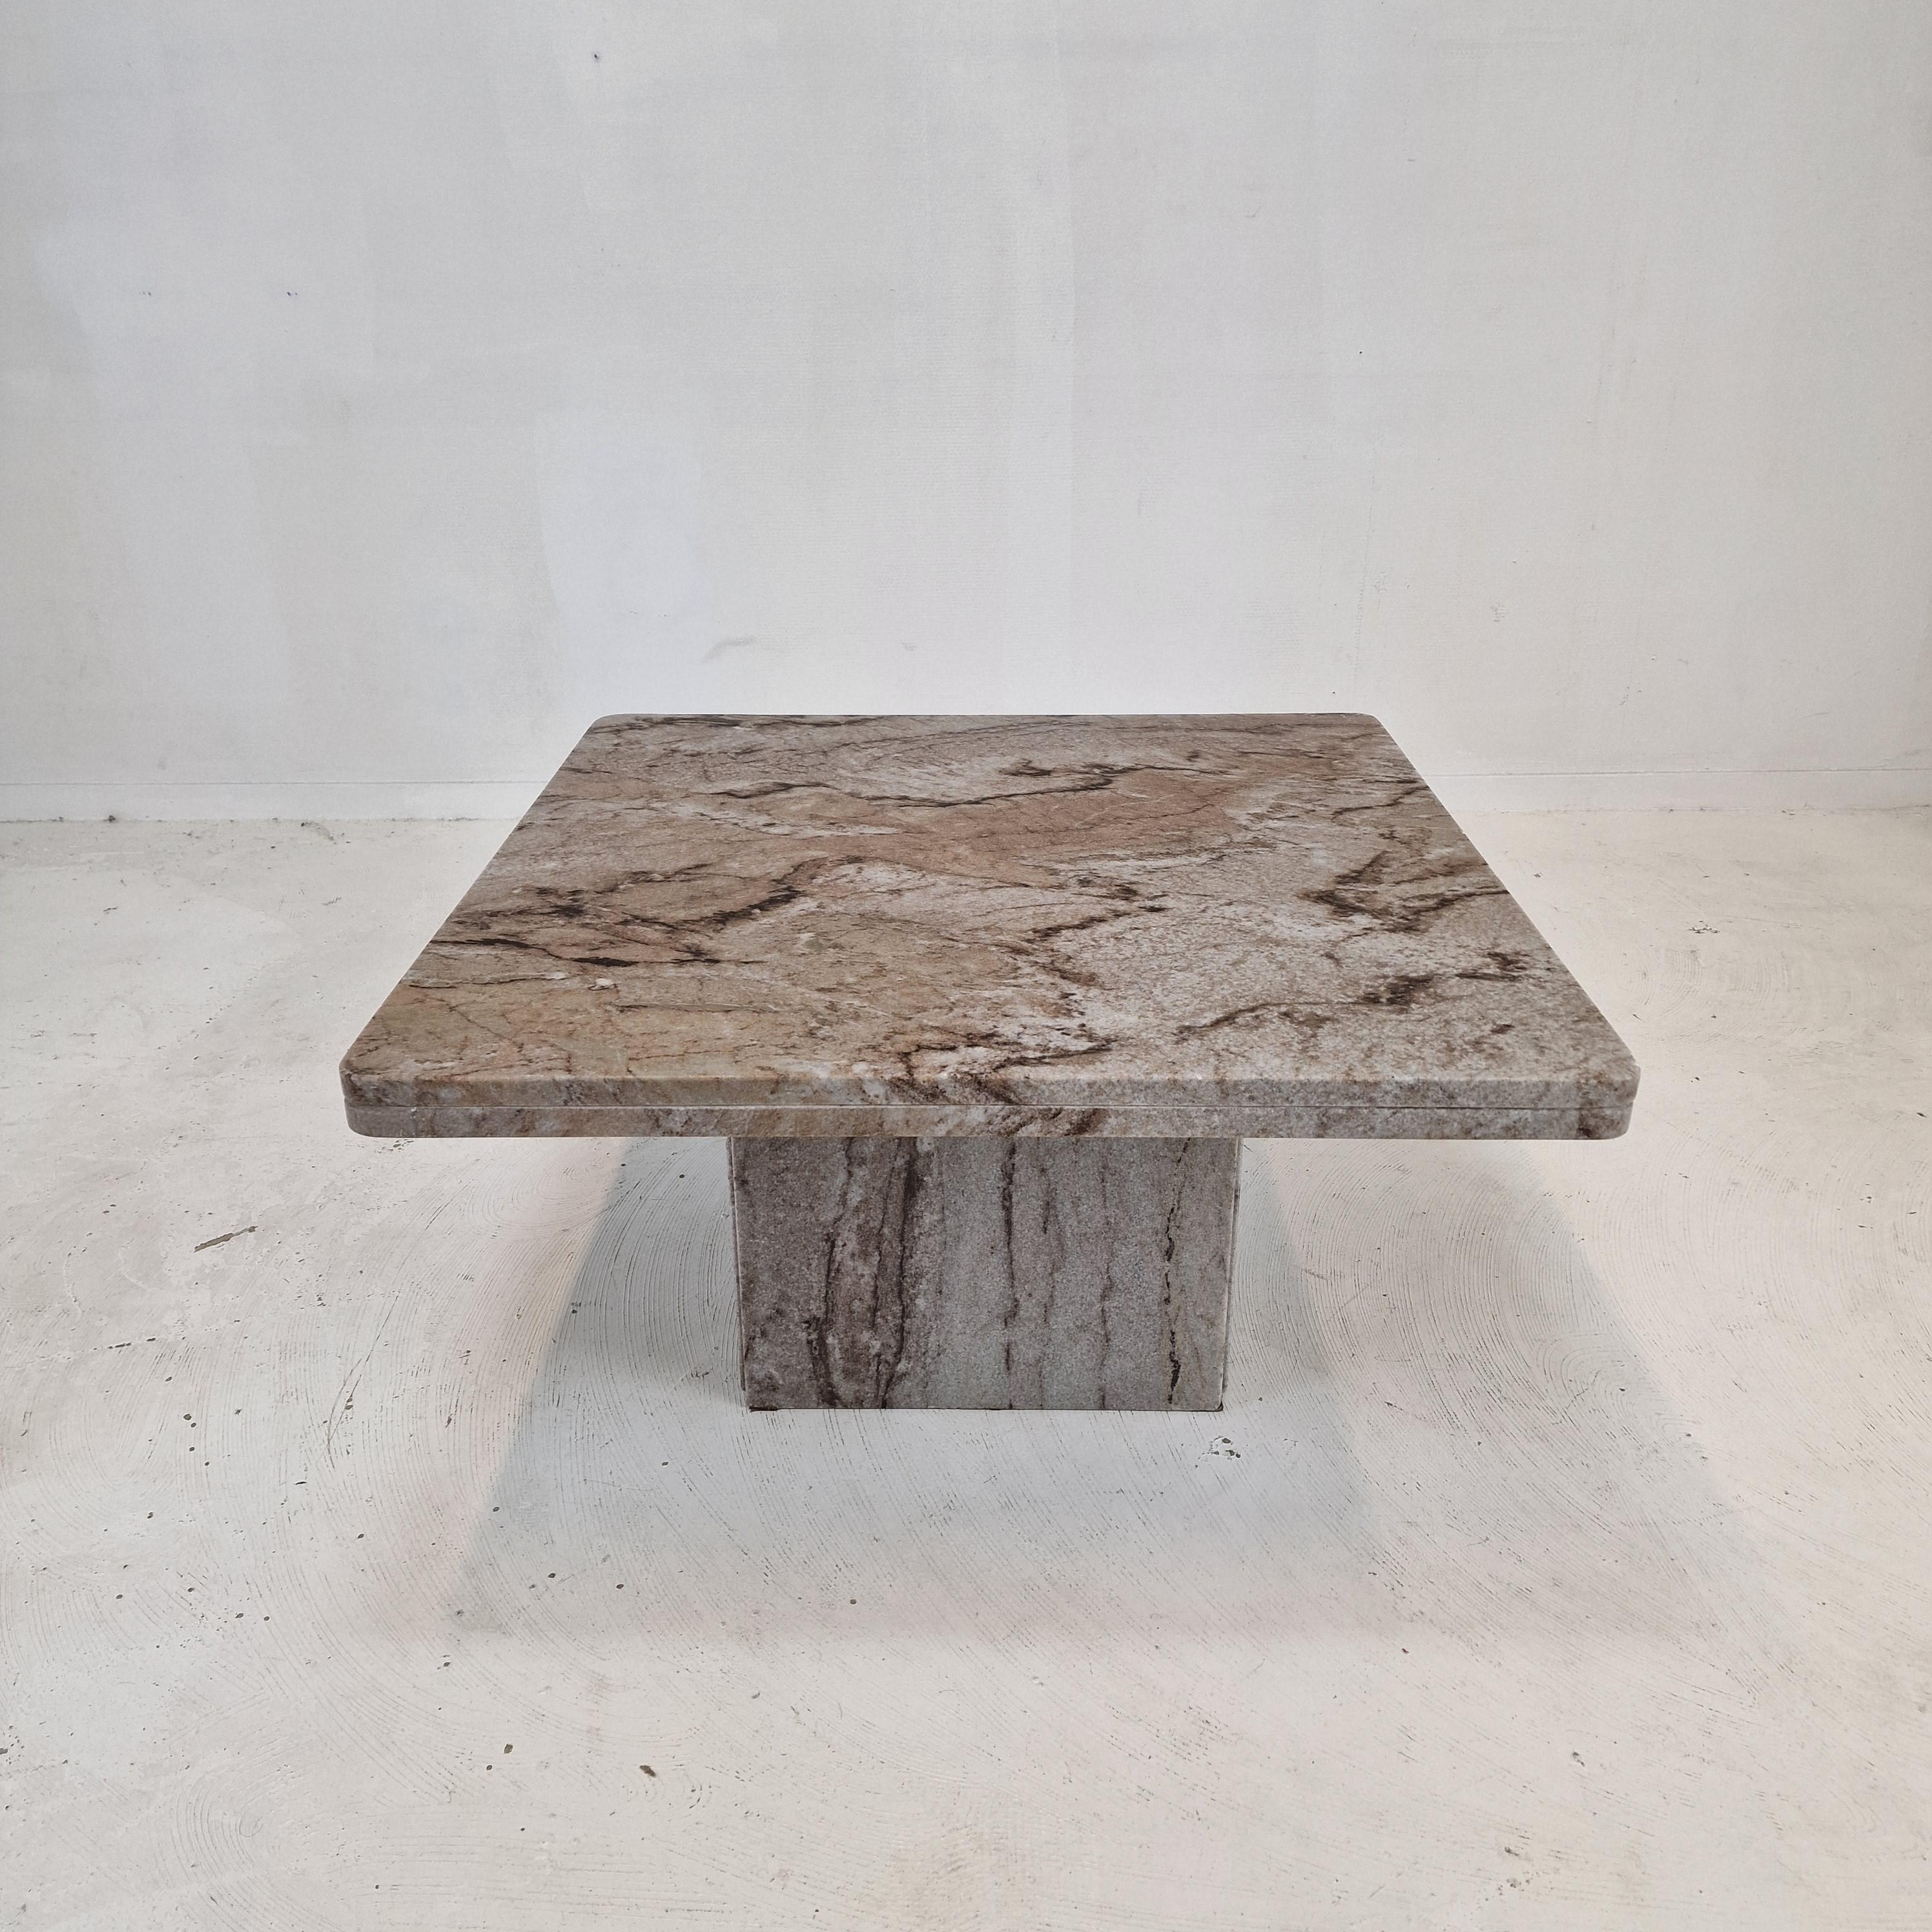 Très belle table basse italienne fabriquée à la main en granit, années 1980.

Il est fait d'un beau granit.
Veuillez prendre note des très beaux motifs.

Il a des traces d'utilisation, voir les photos.

Nous travaillons avec des emballeurs et des